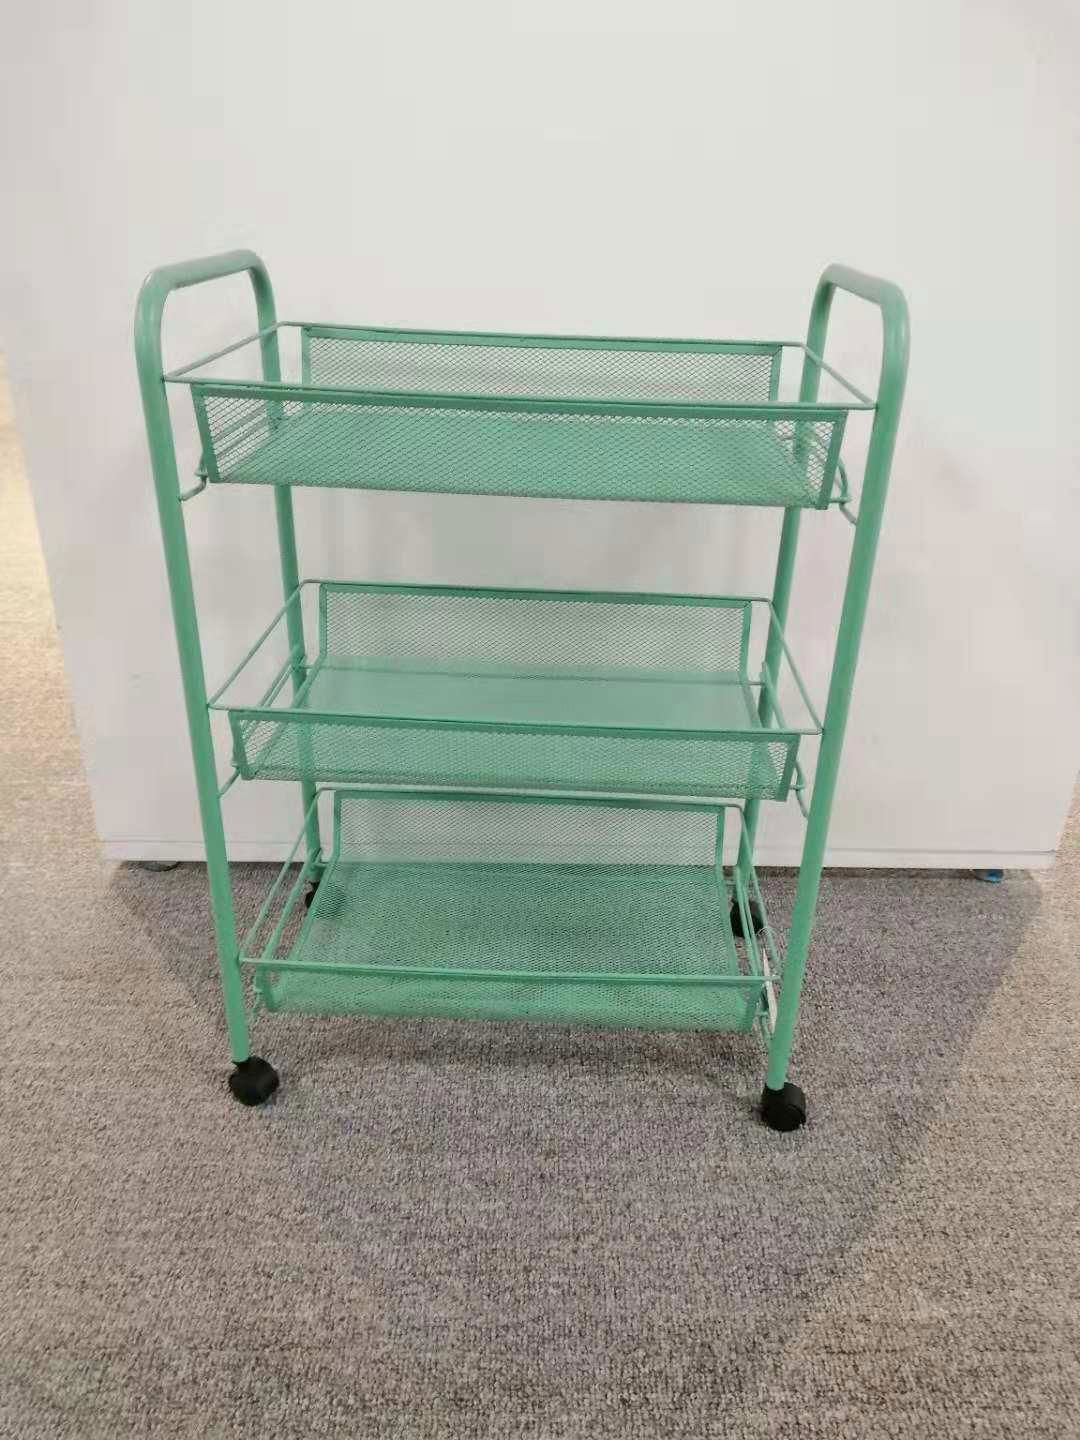 Three layer storage food shelf kitchen trolley cart 